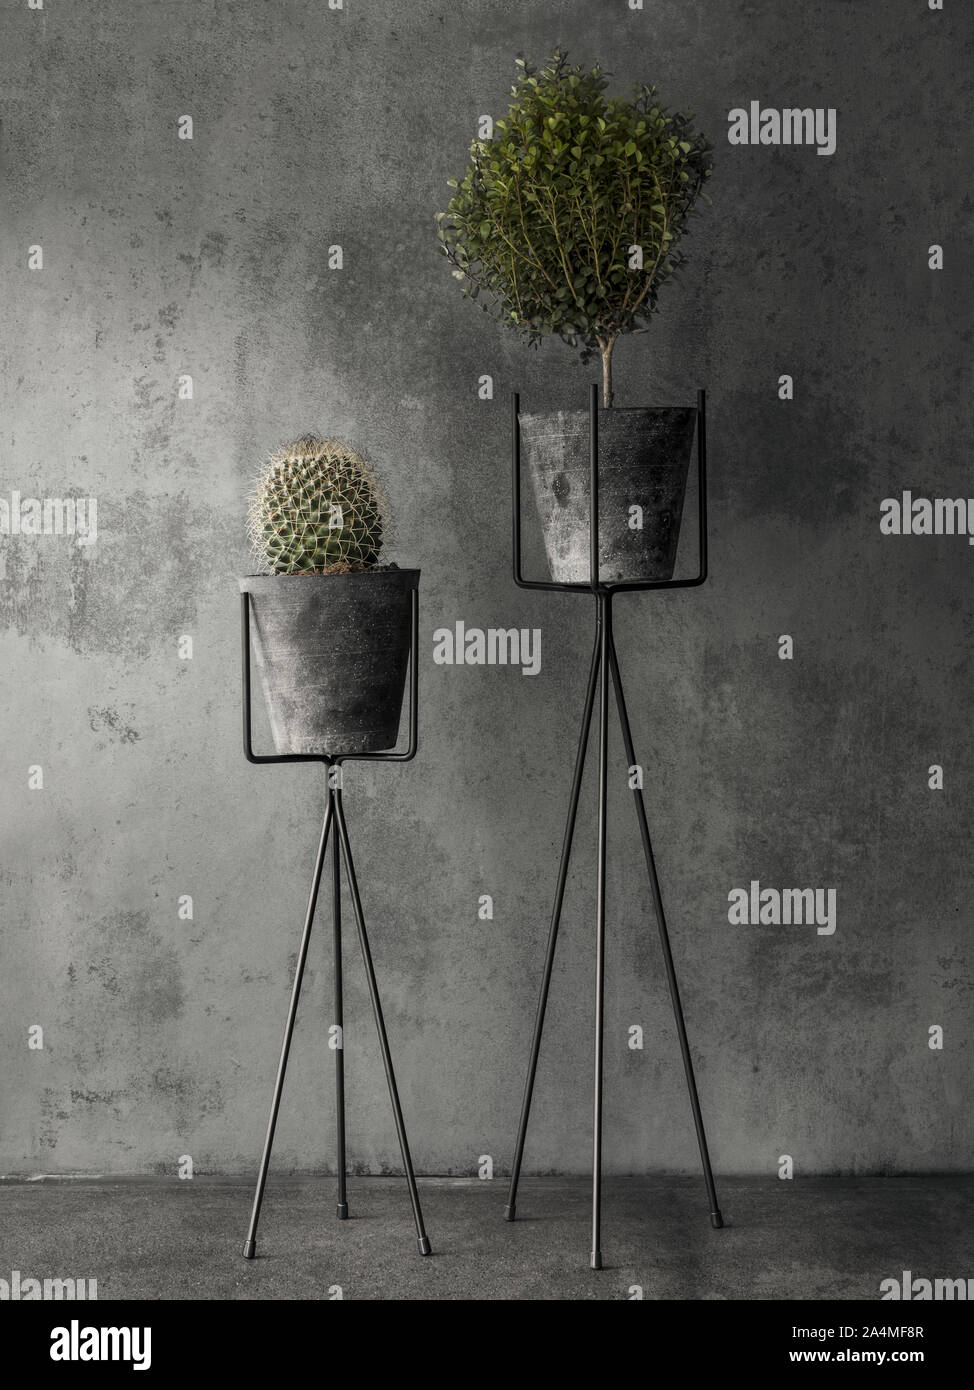 Piante in vaso contro uno sfondo grigio Foto Stock